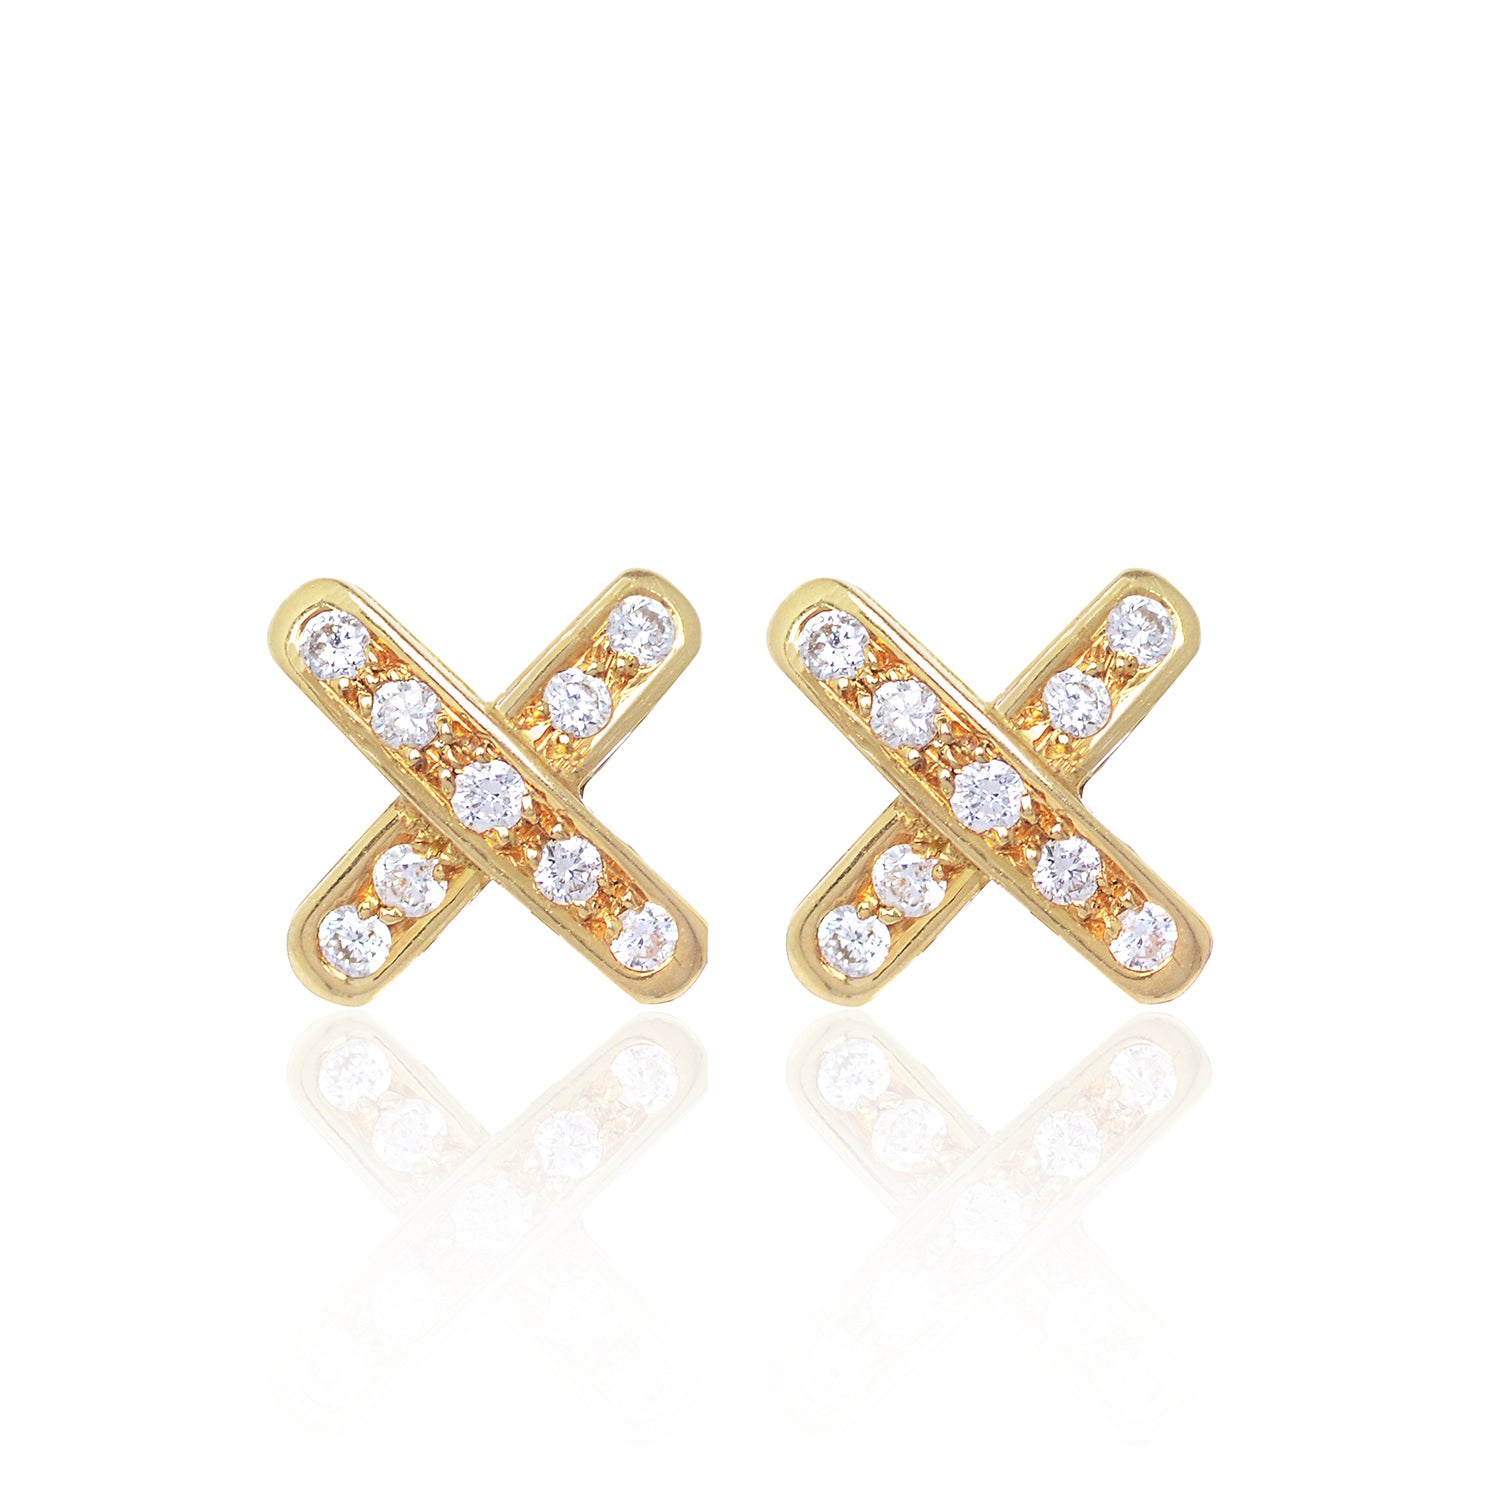 Diamond Cross Earrings by McFarlane Fine Jewellery in 18ct yellow gold